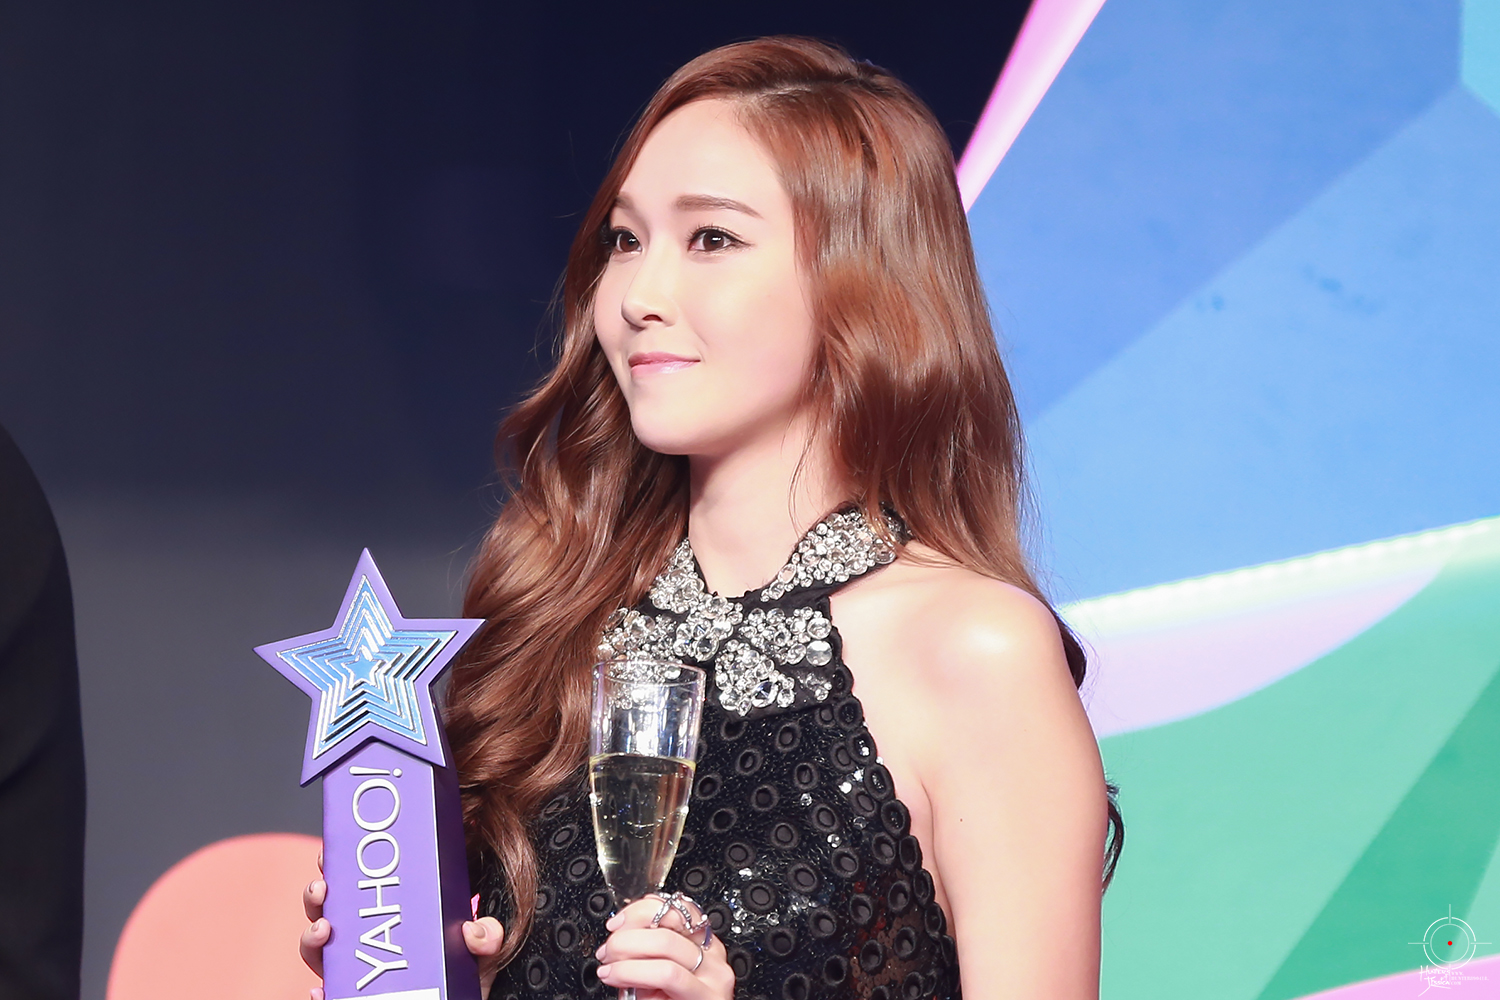 [PIC][07-12-2014]Jessica khởi hành đi Hồng Kông để tham dự "Yahoo Asia Buzz Award 2014" vào sáng nay - Page 3 275ED73E548FCF372704EC